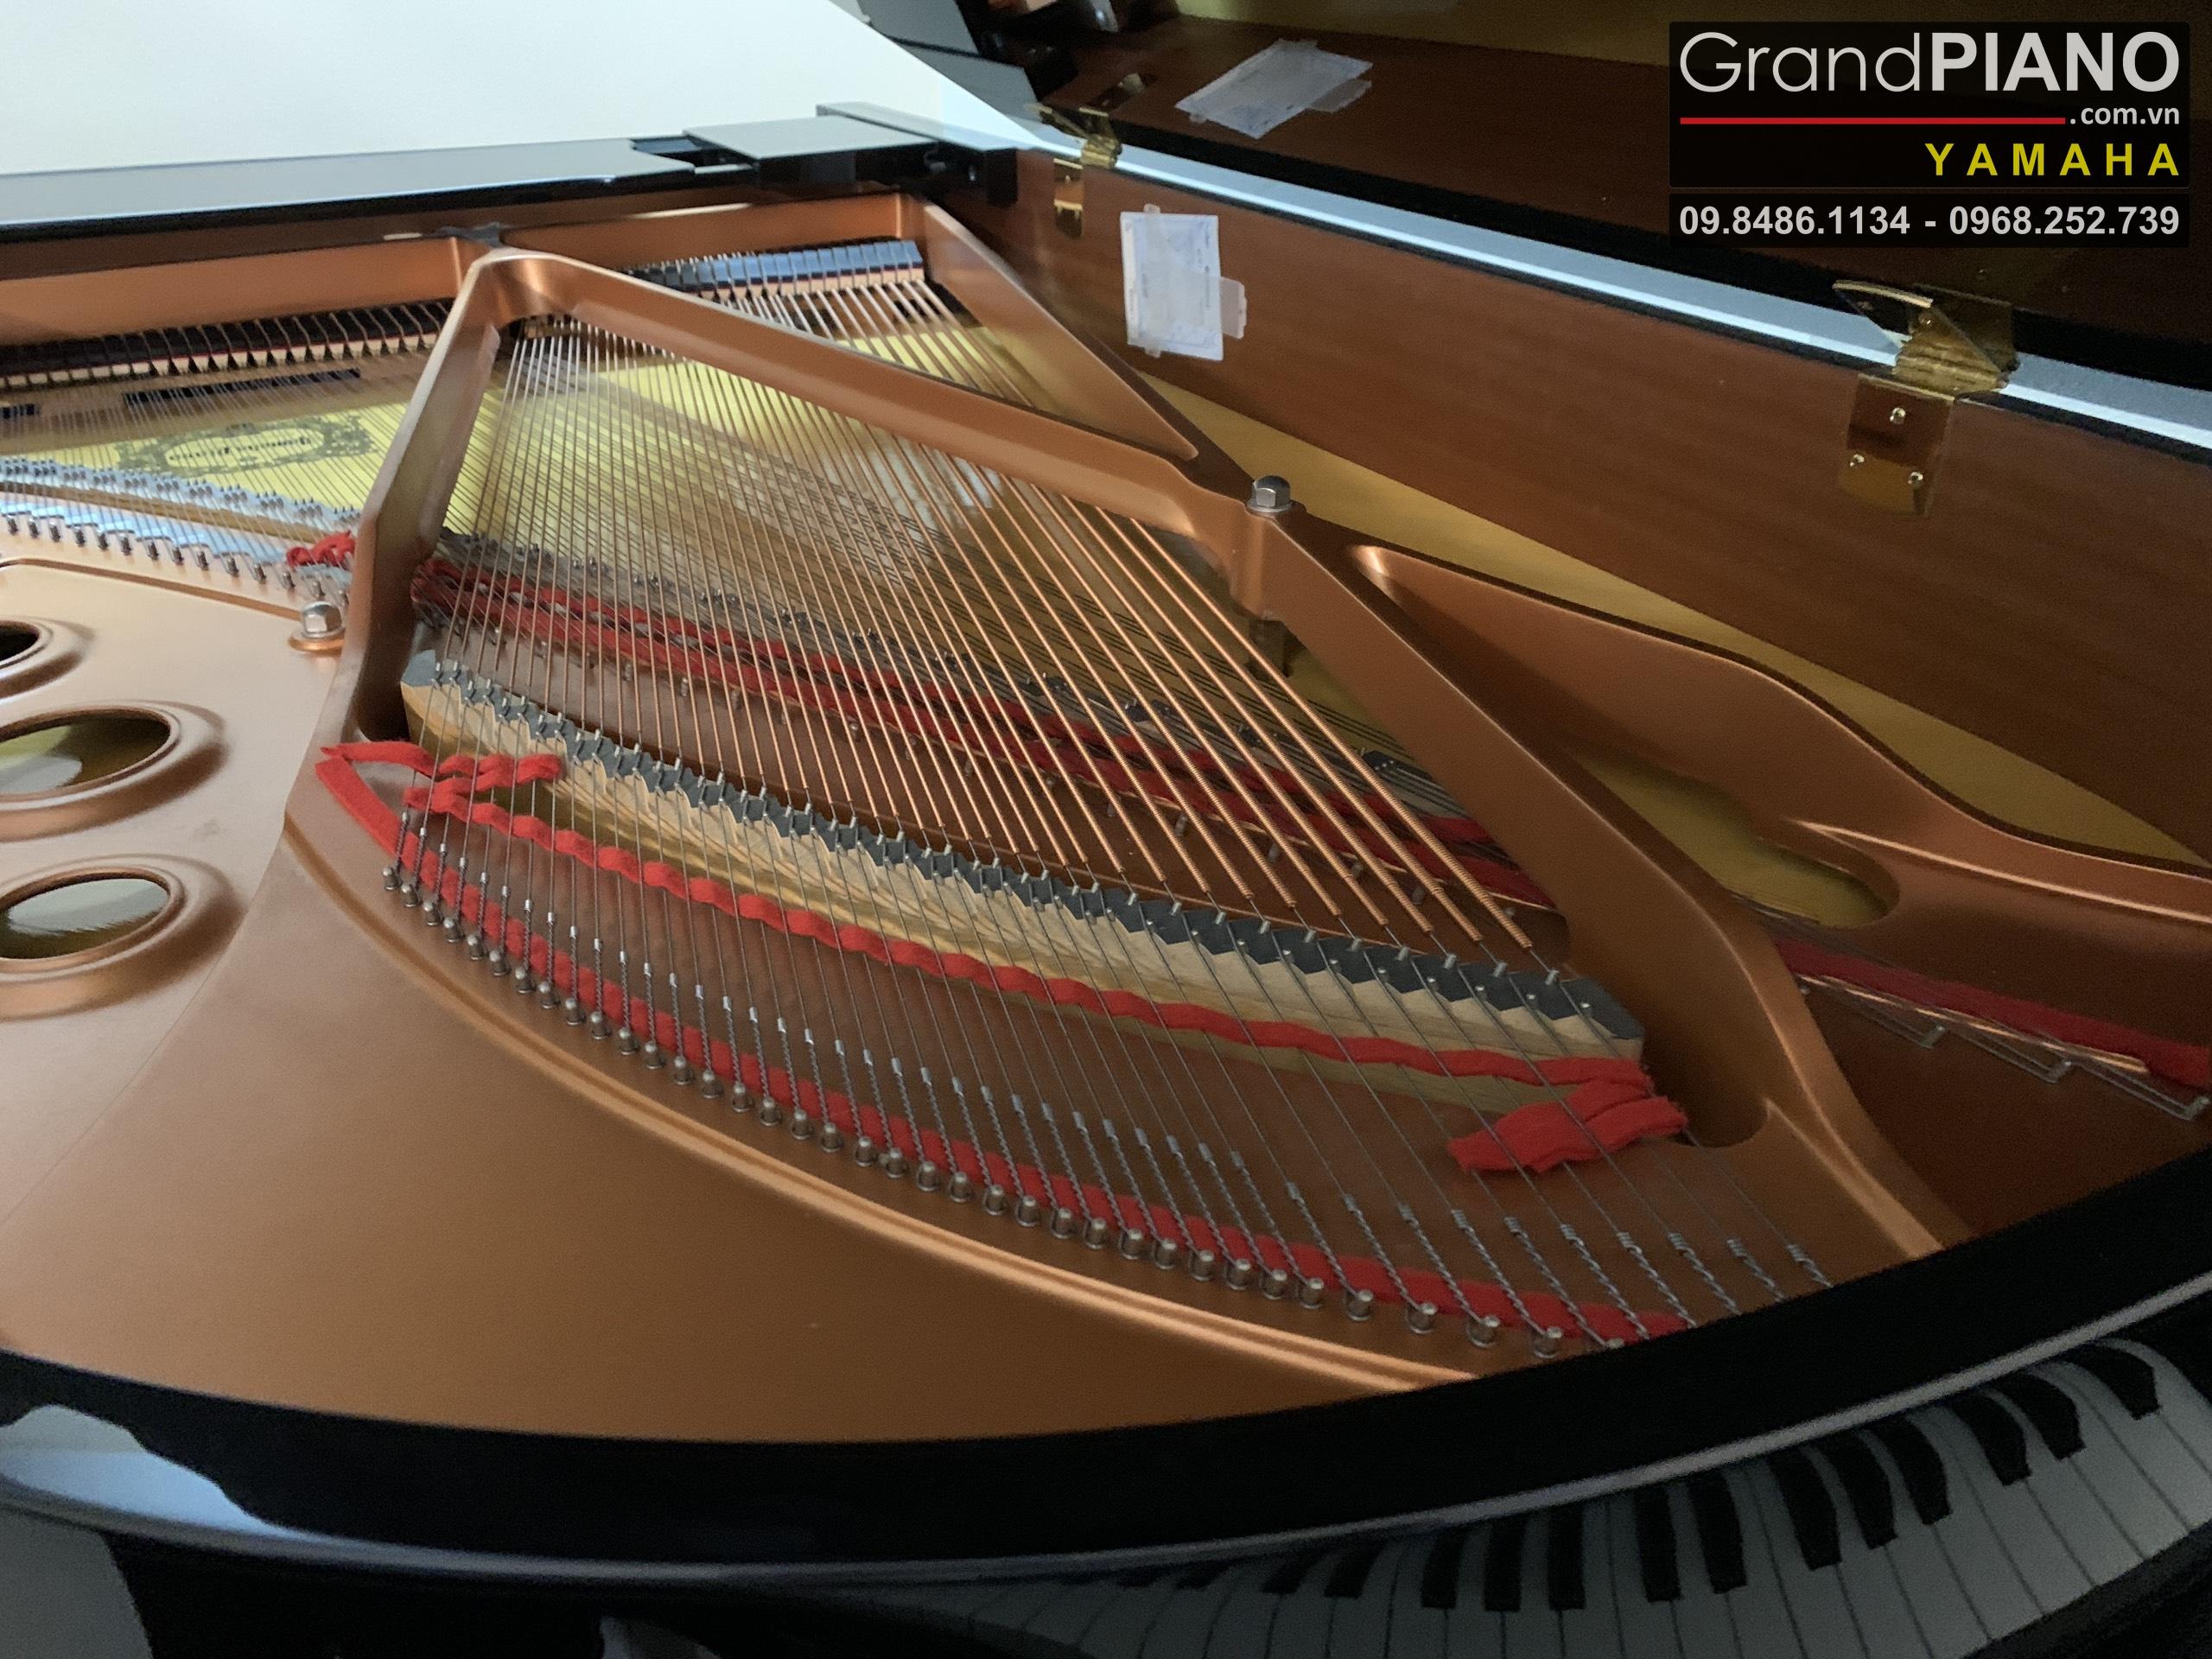 Dan-Grand-PIANO-YAMAHA-C5-Seri6223471.-1371200b4357bd09e44629_GrandPIANO_result.jpg